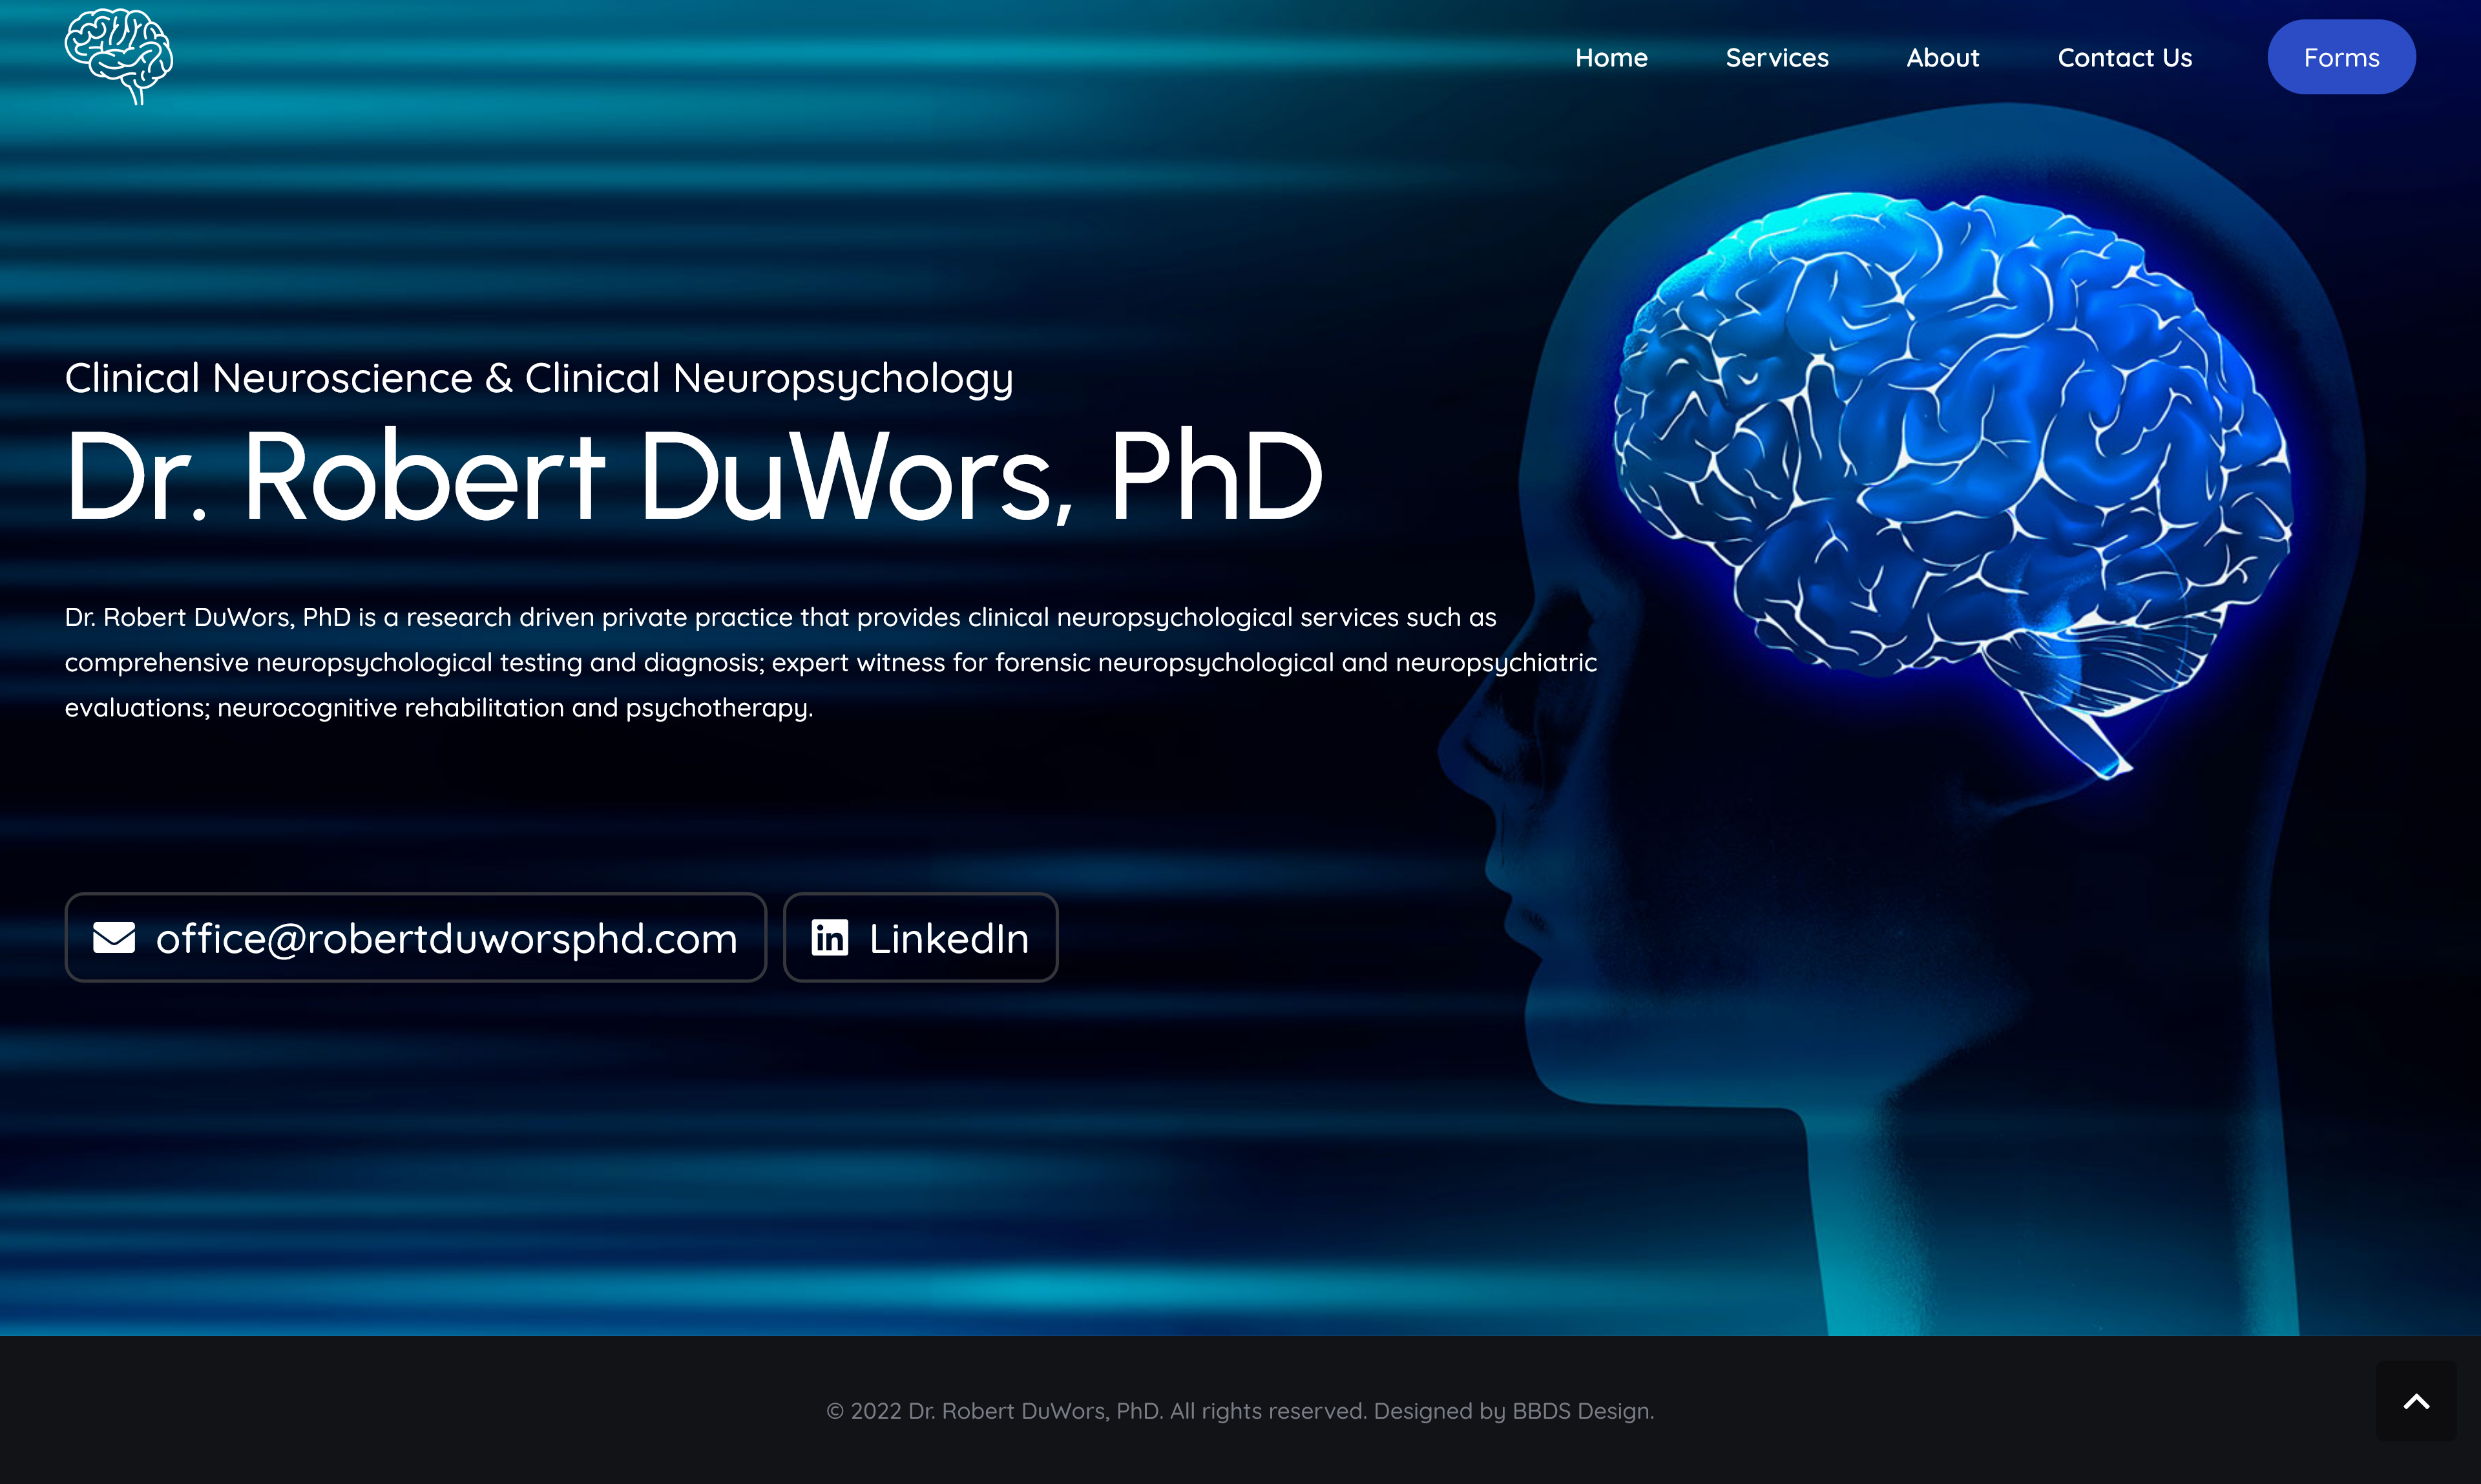 Personal Website - Dr. Robert DuWors, PhD